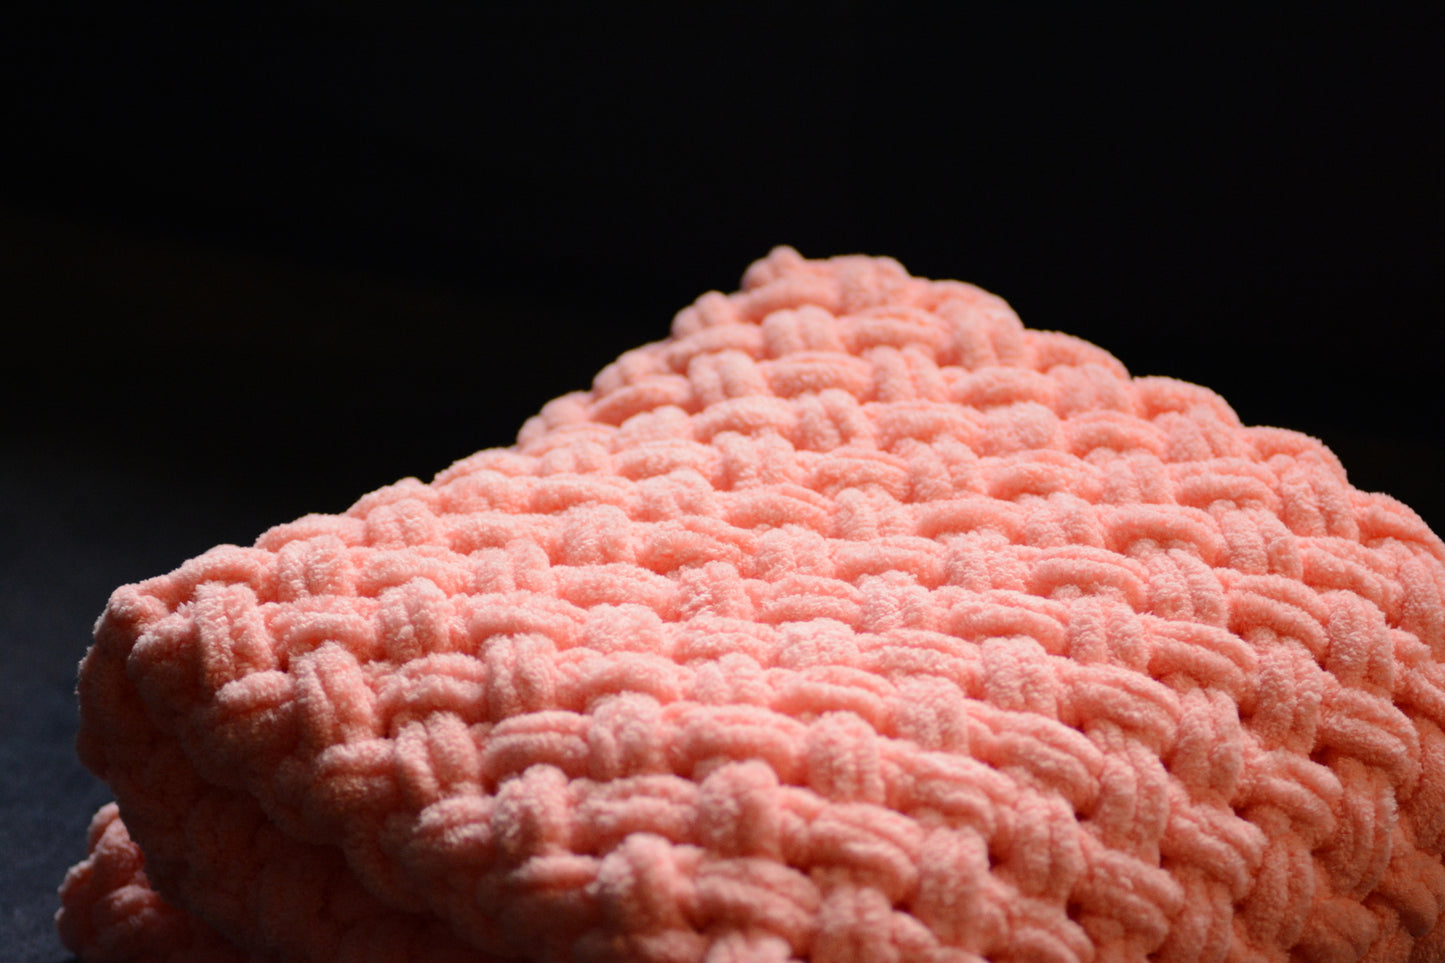 Baby plush blanket Pink